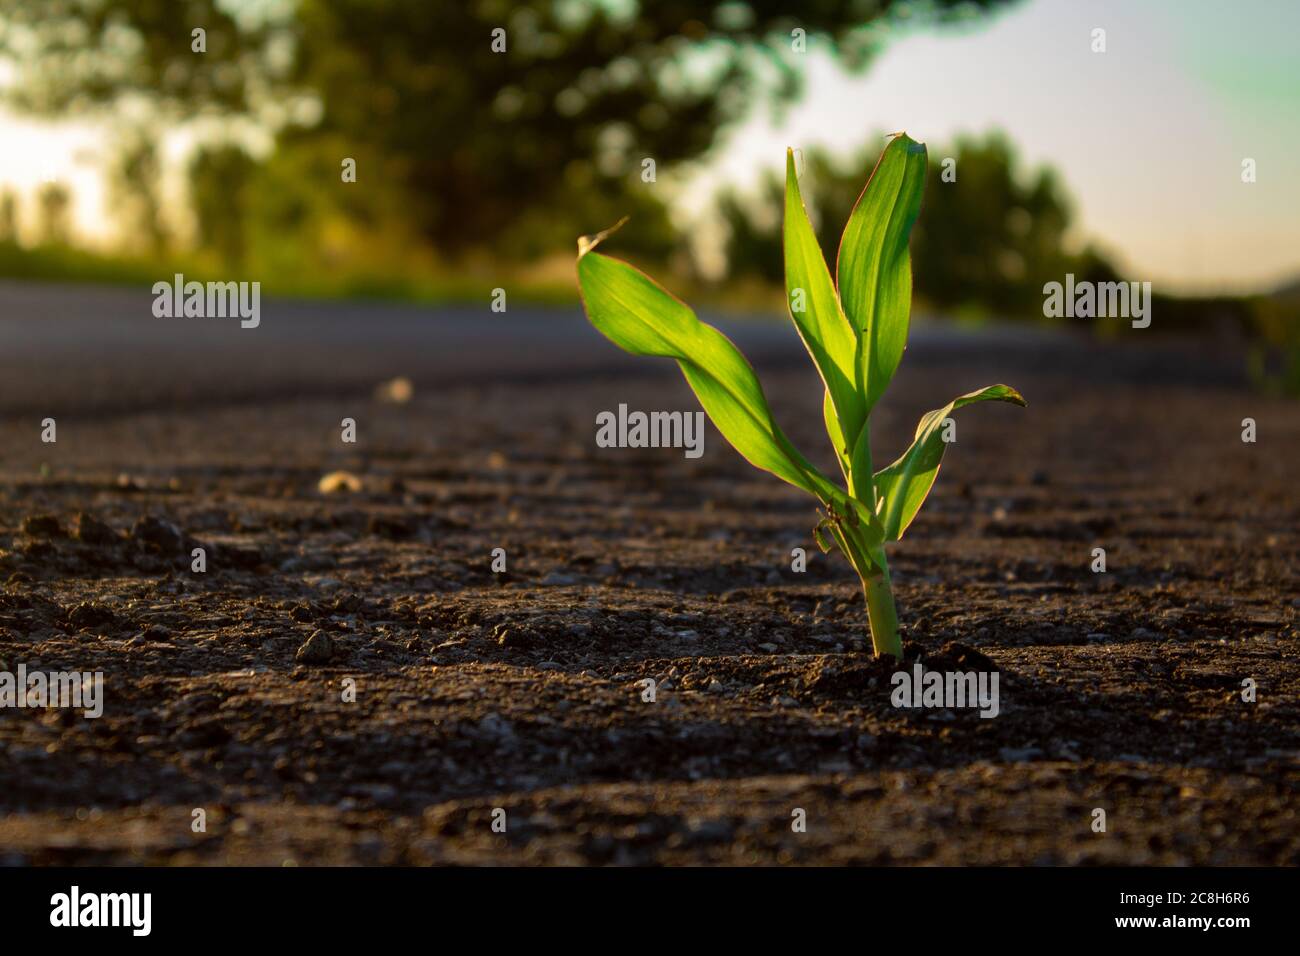 Une jeune plante solitaire a japlé de l'asphalte. Concept d'écologie Banque D'Images